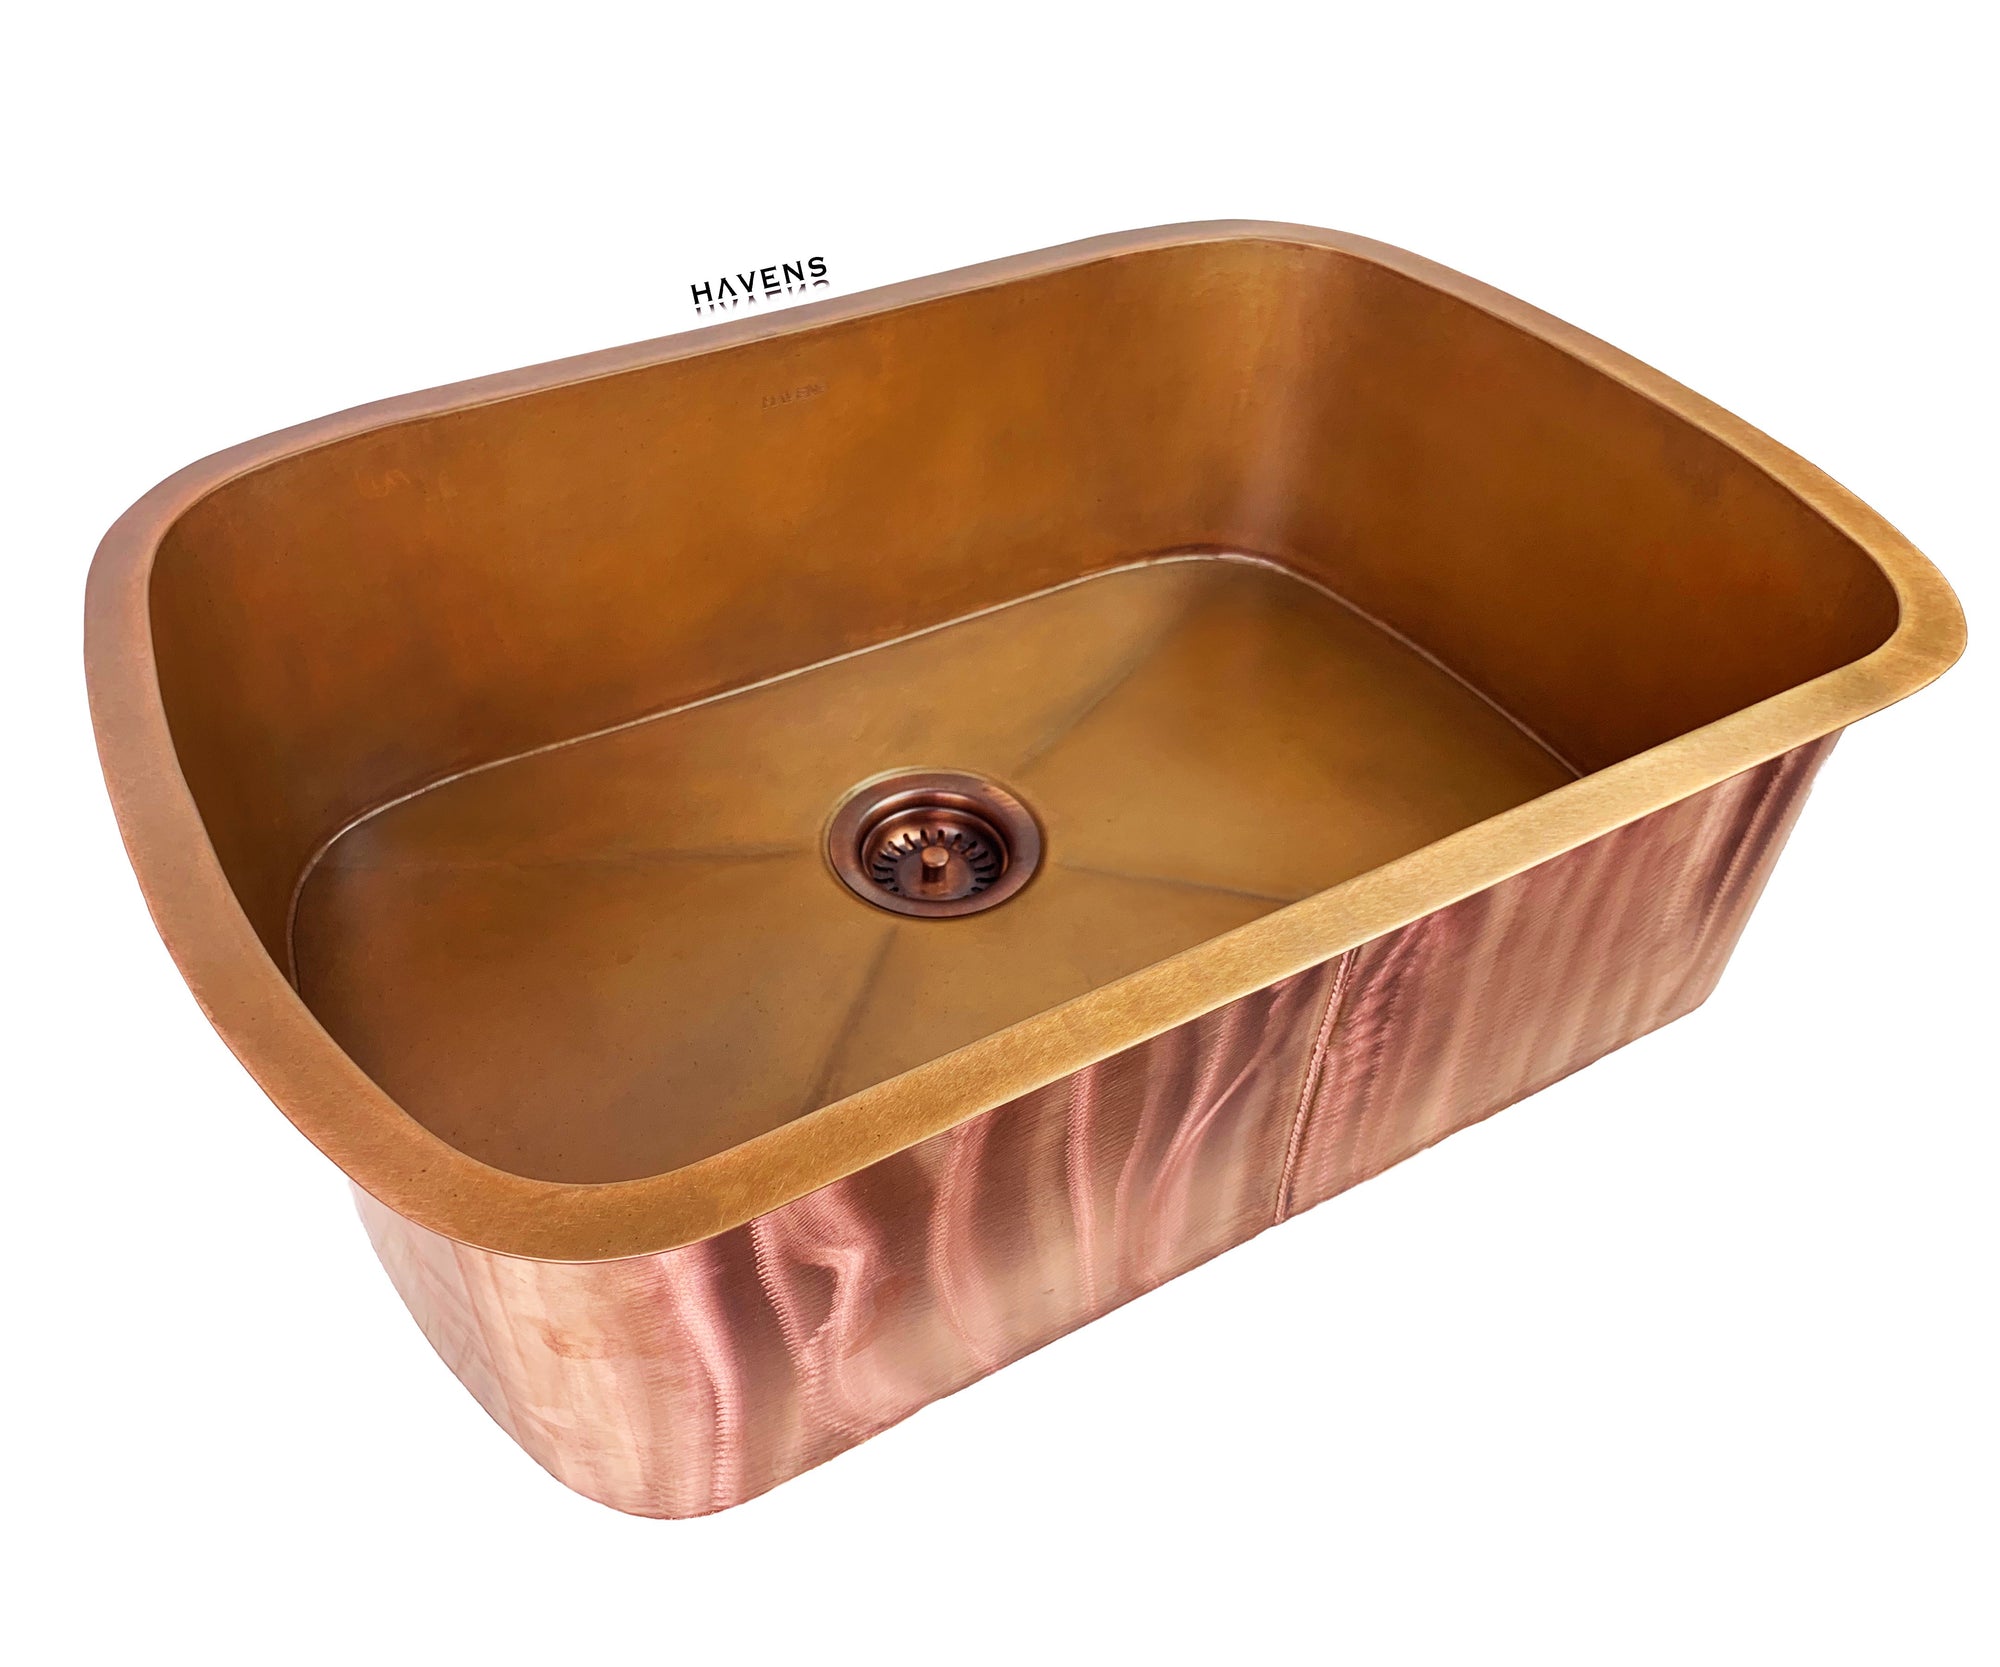 Custom Radius Corner Sink - Copper